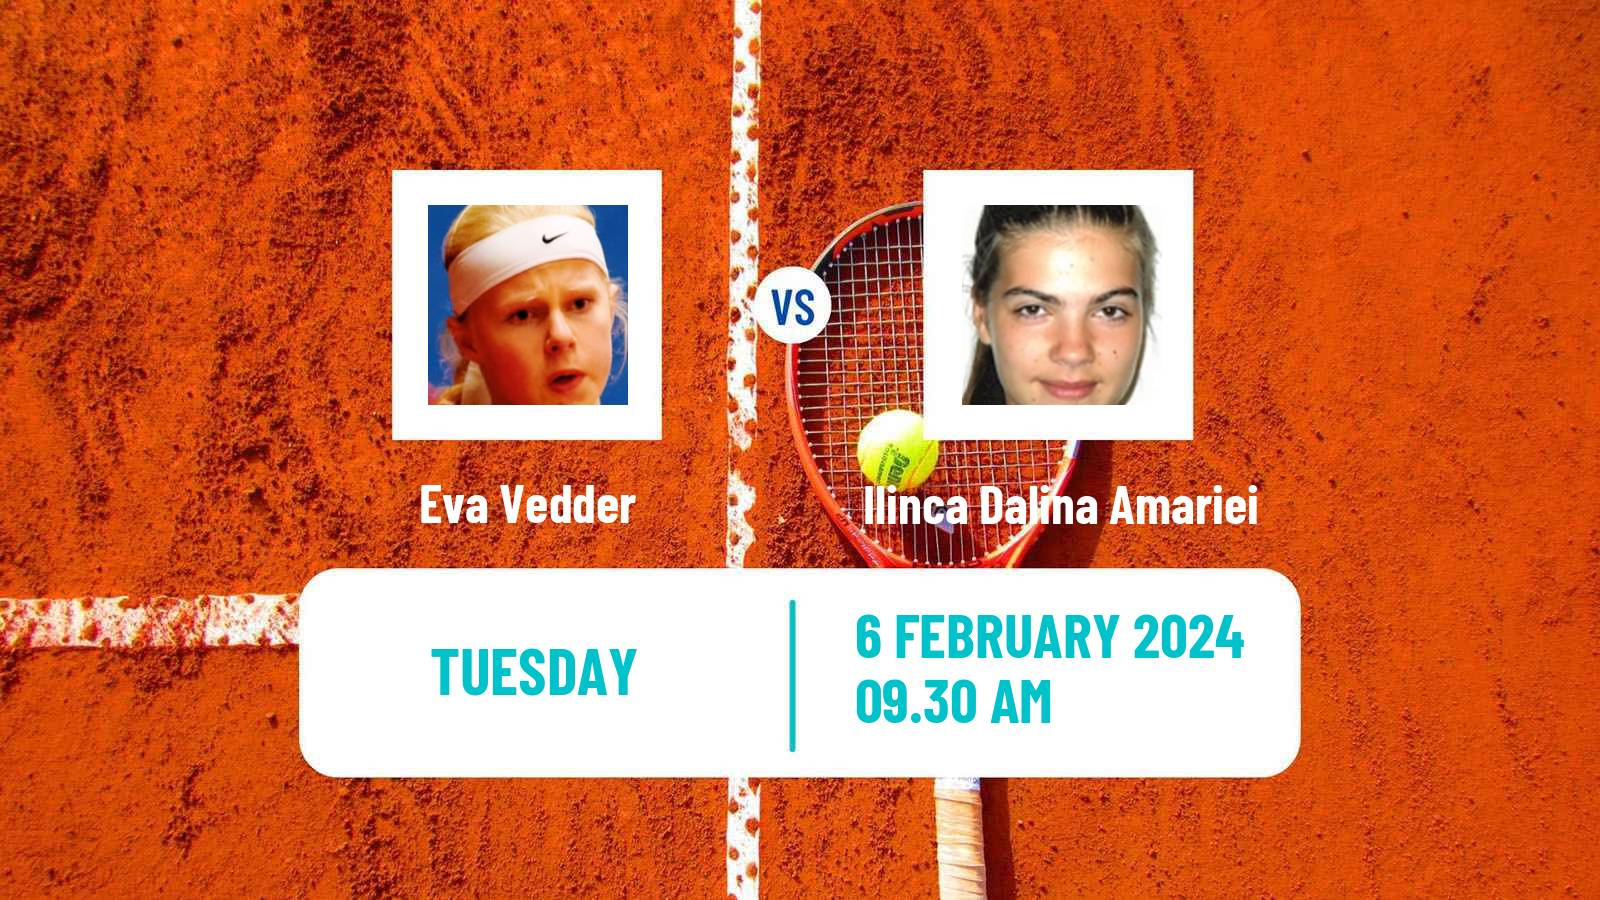 Tennis ITF W35 Antalya 2 Women 2024 Eva Vedder - Ilinca Dalina Amariei